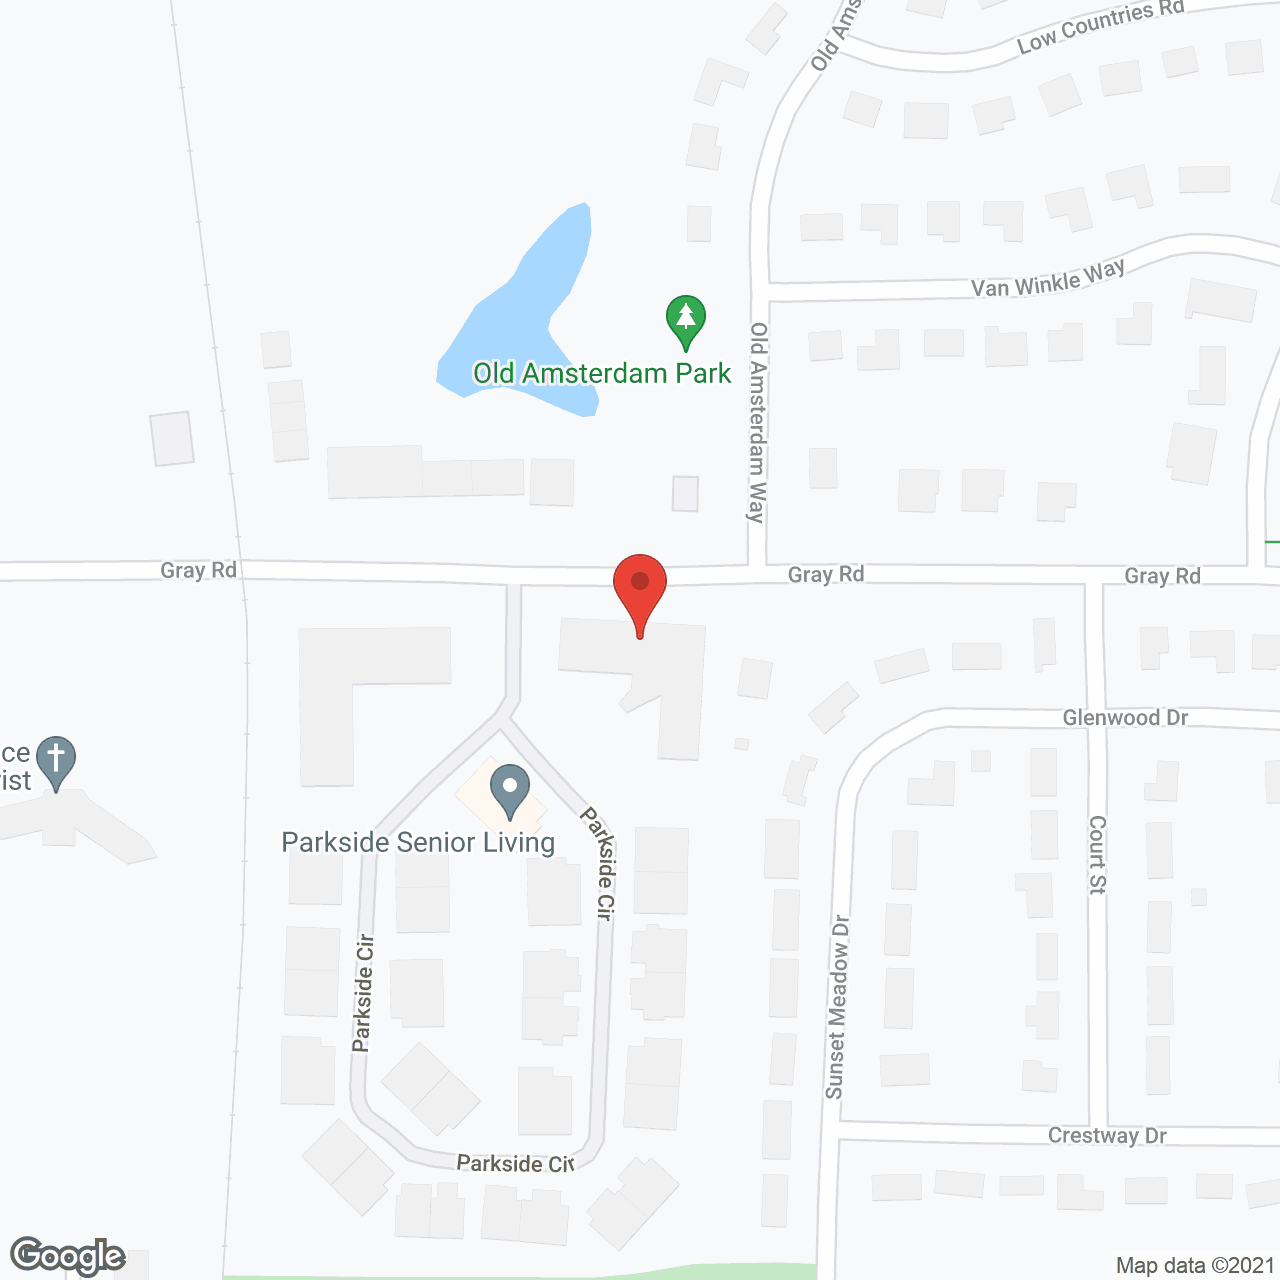 Parkside in google map